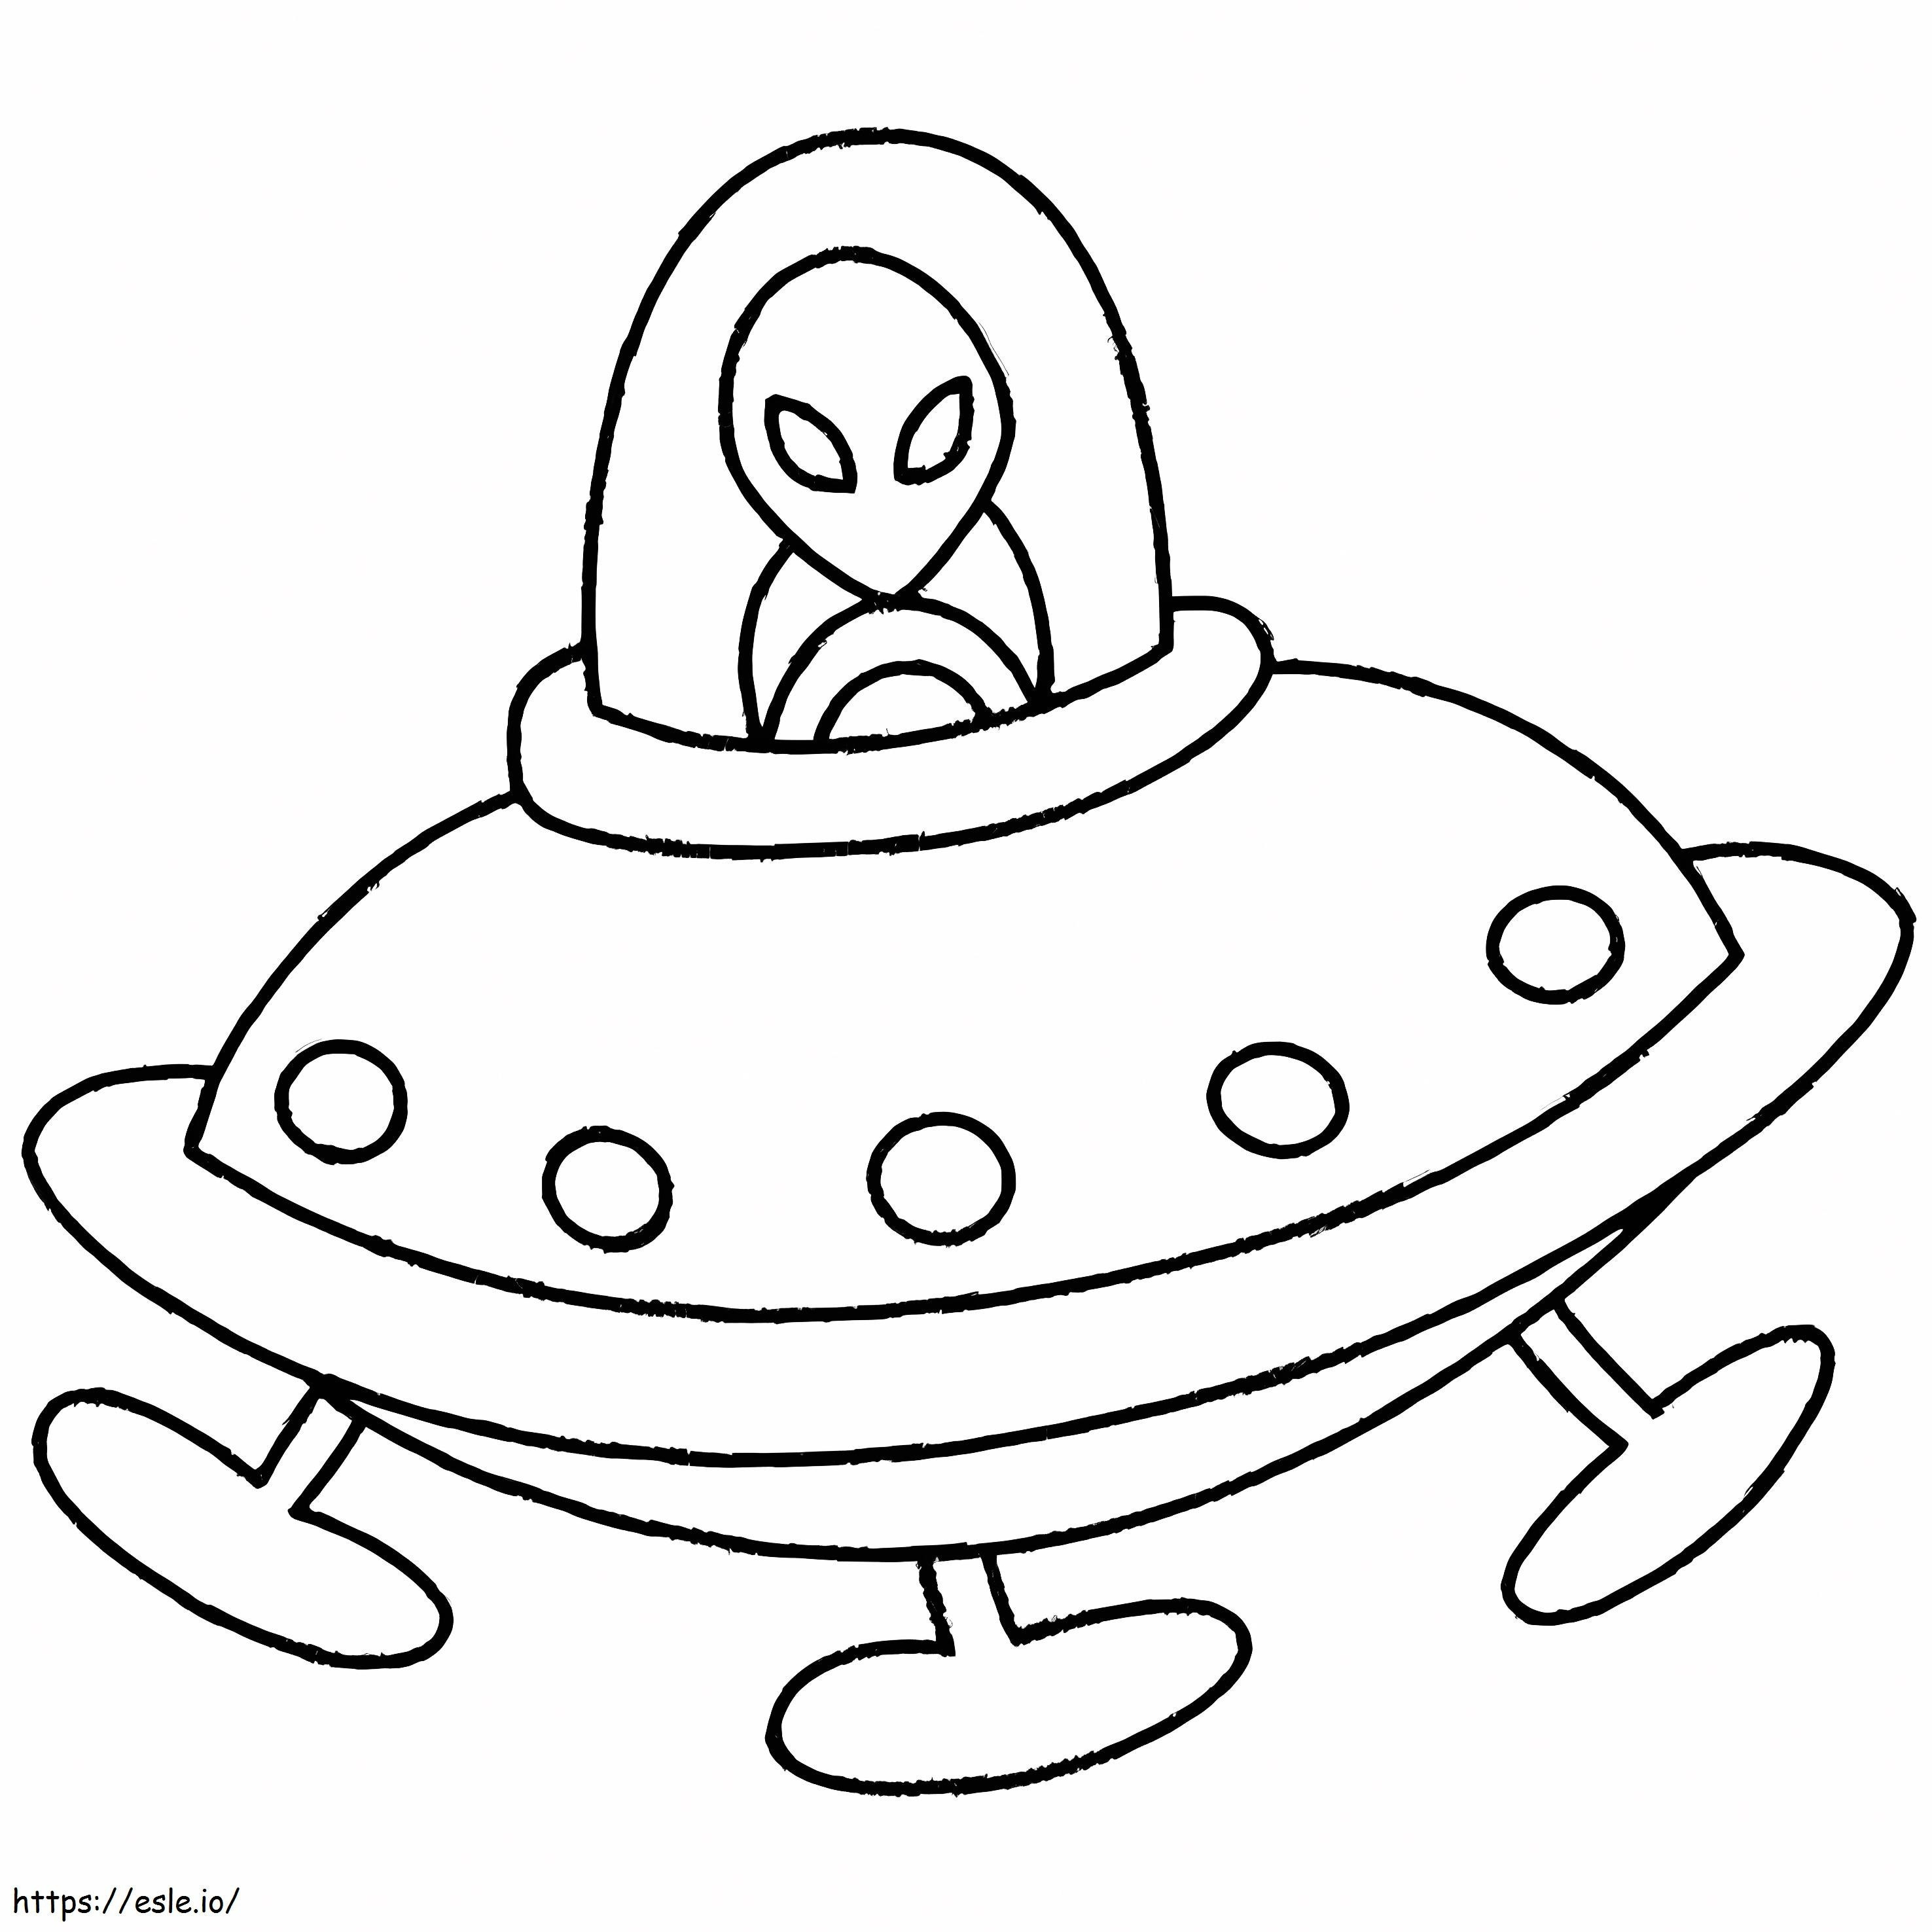 Außerirdischer mit Ufo ausmalbilder